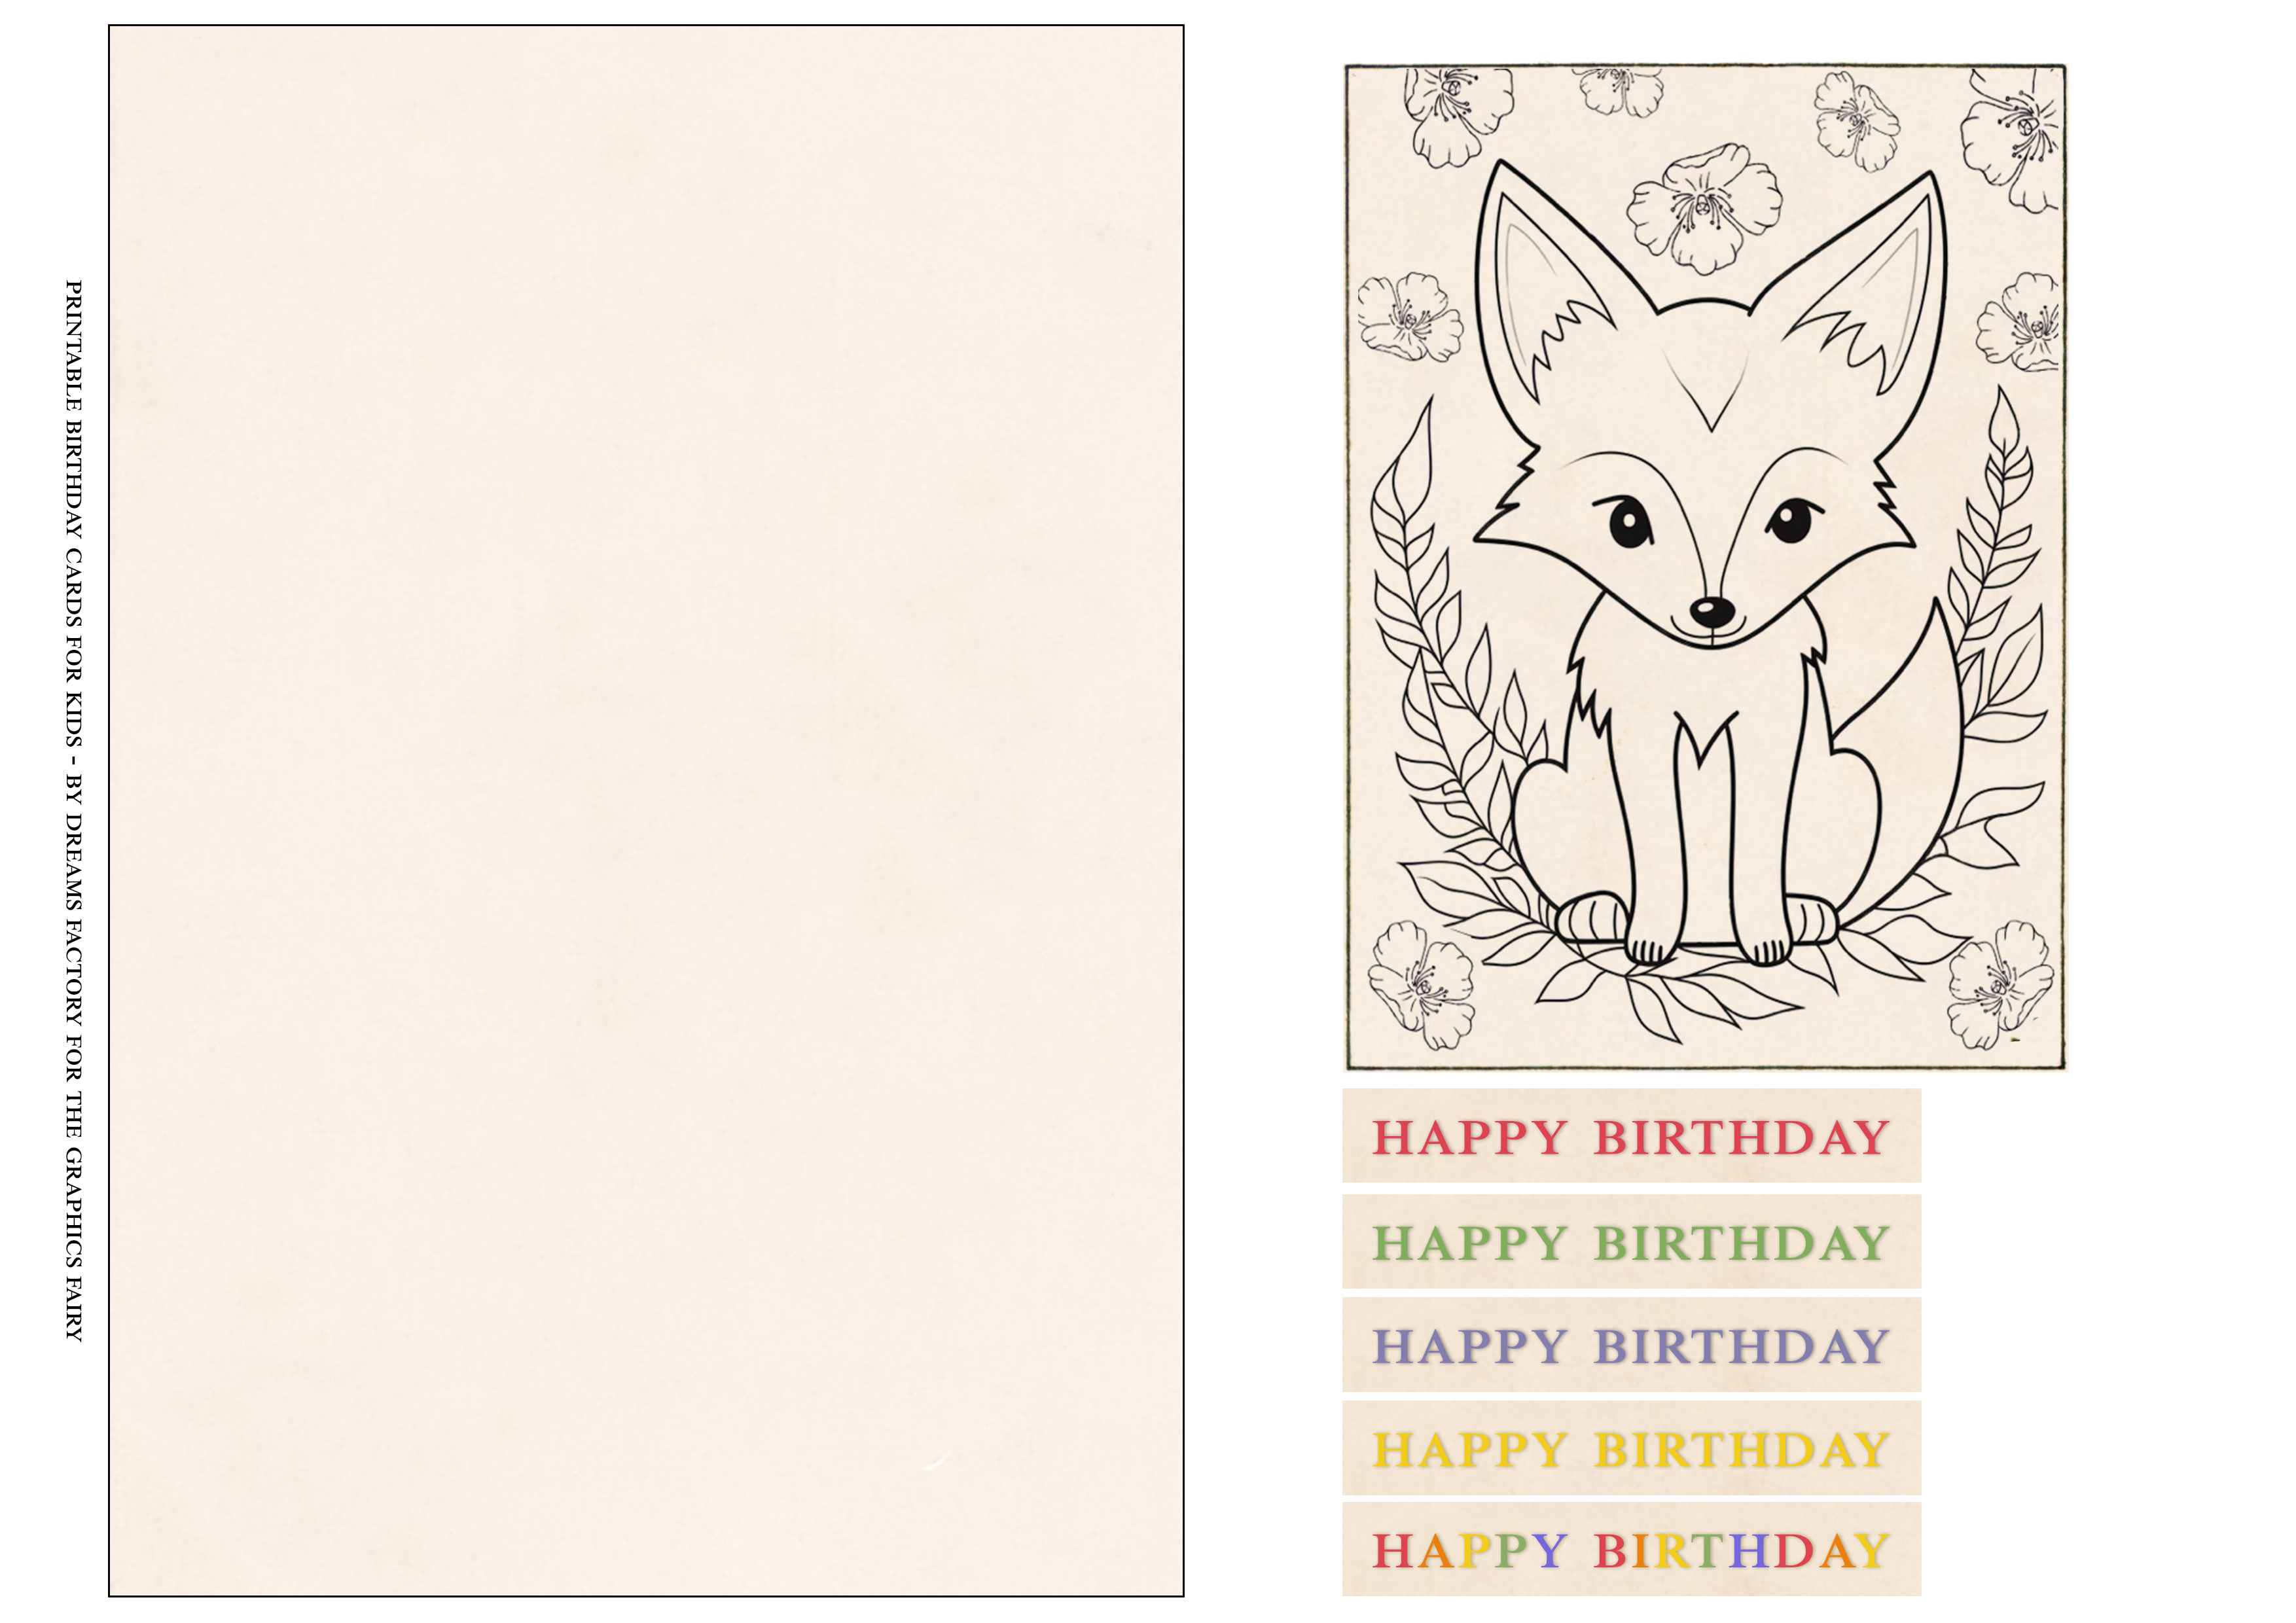 Printable birthday cards for kids - fox printable